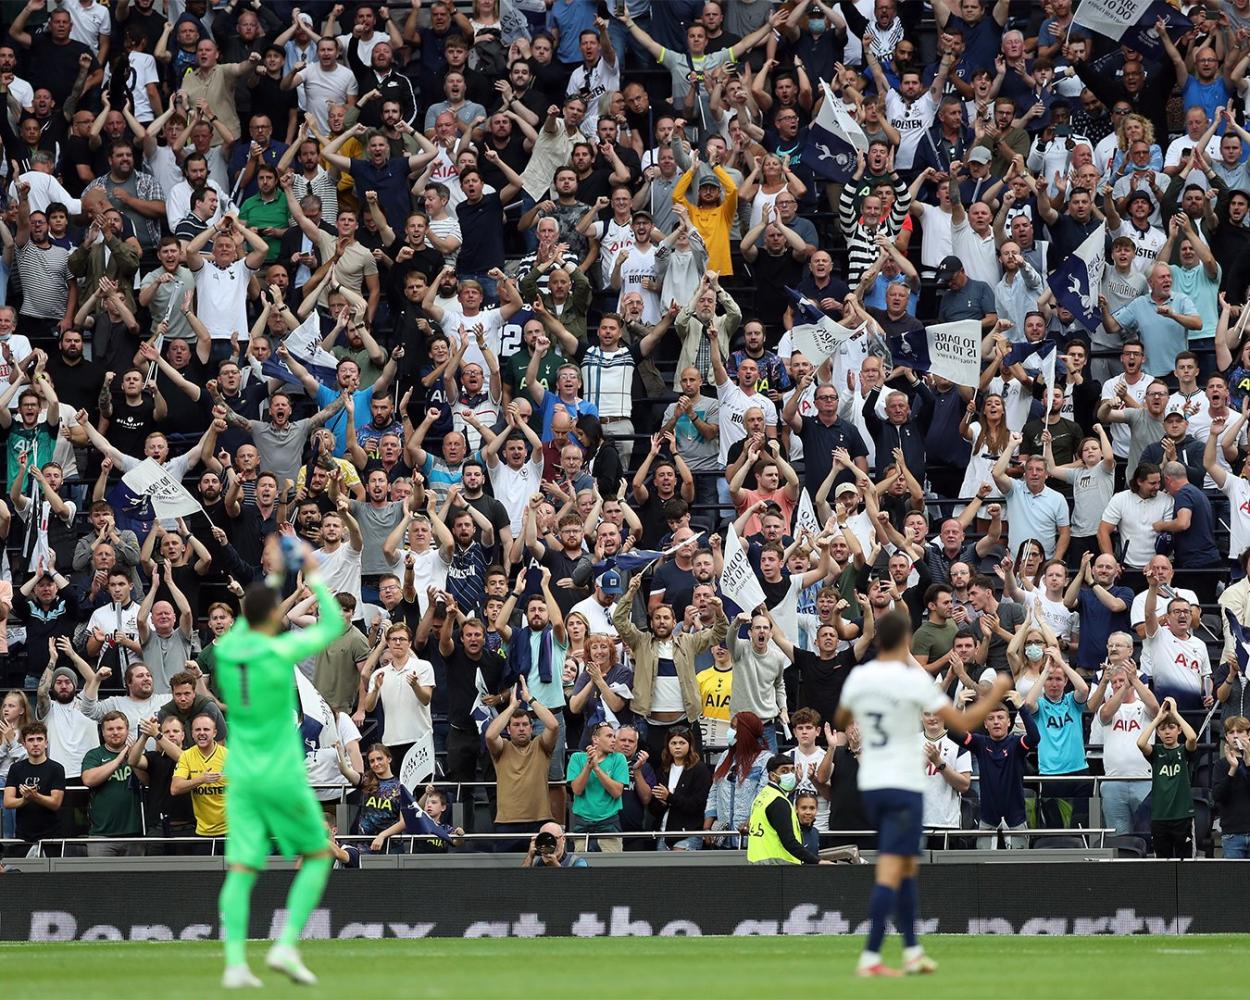 Tottenham despidiendo a su afición/imagen:SpursOfficial